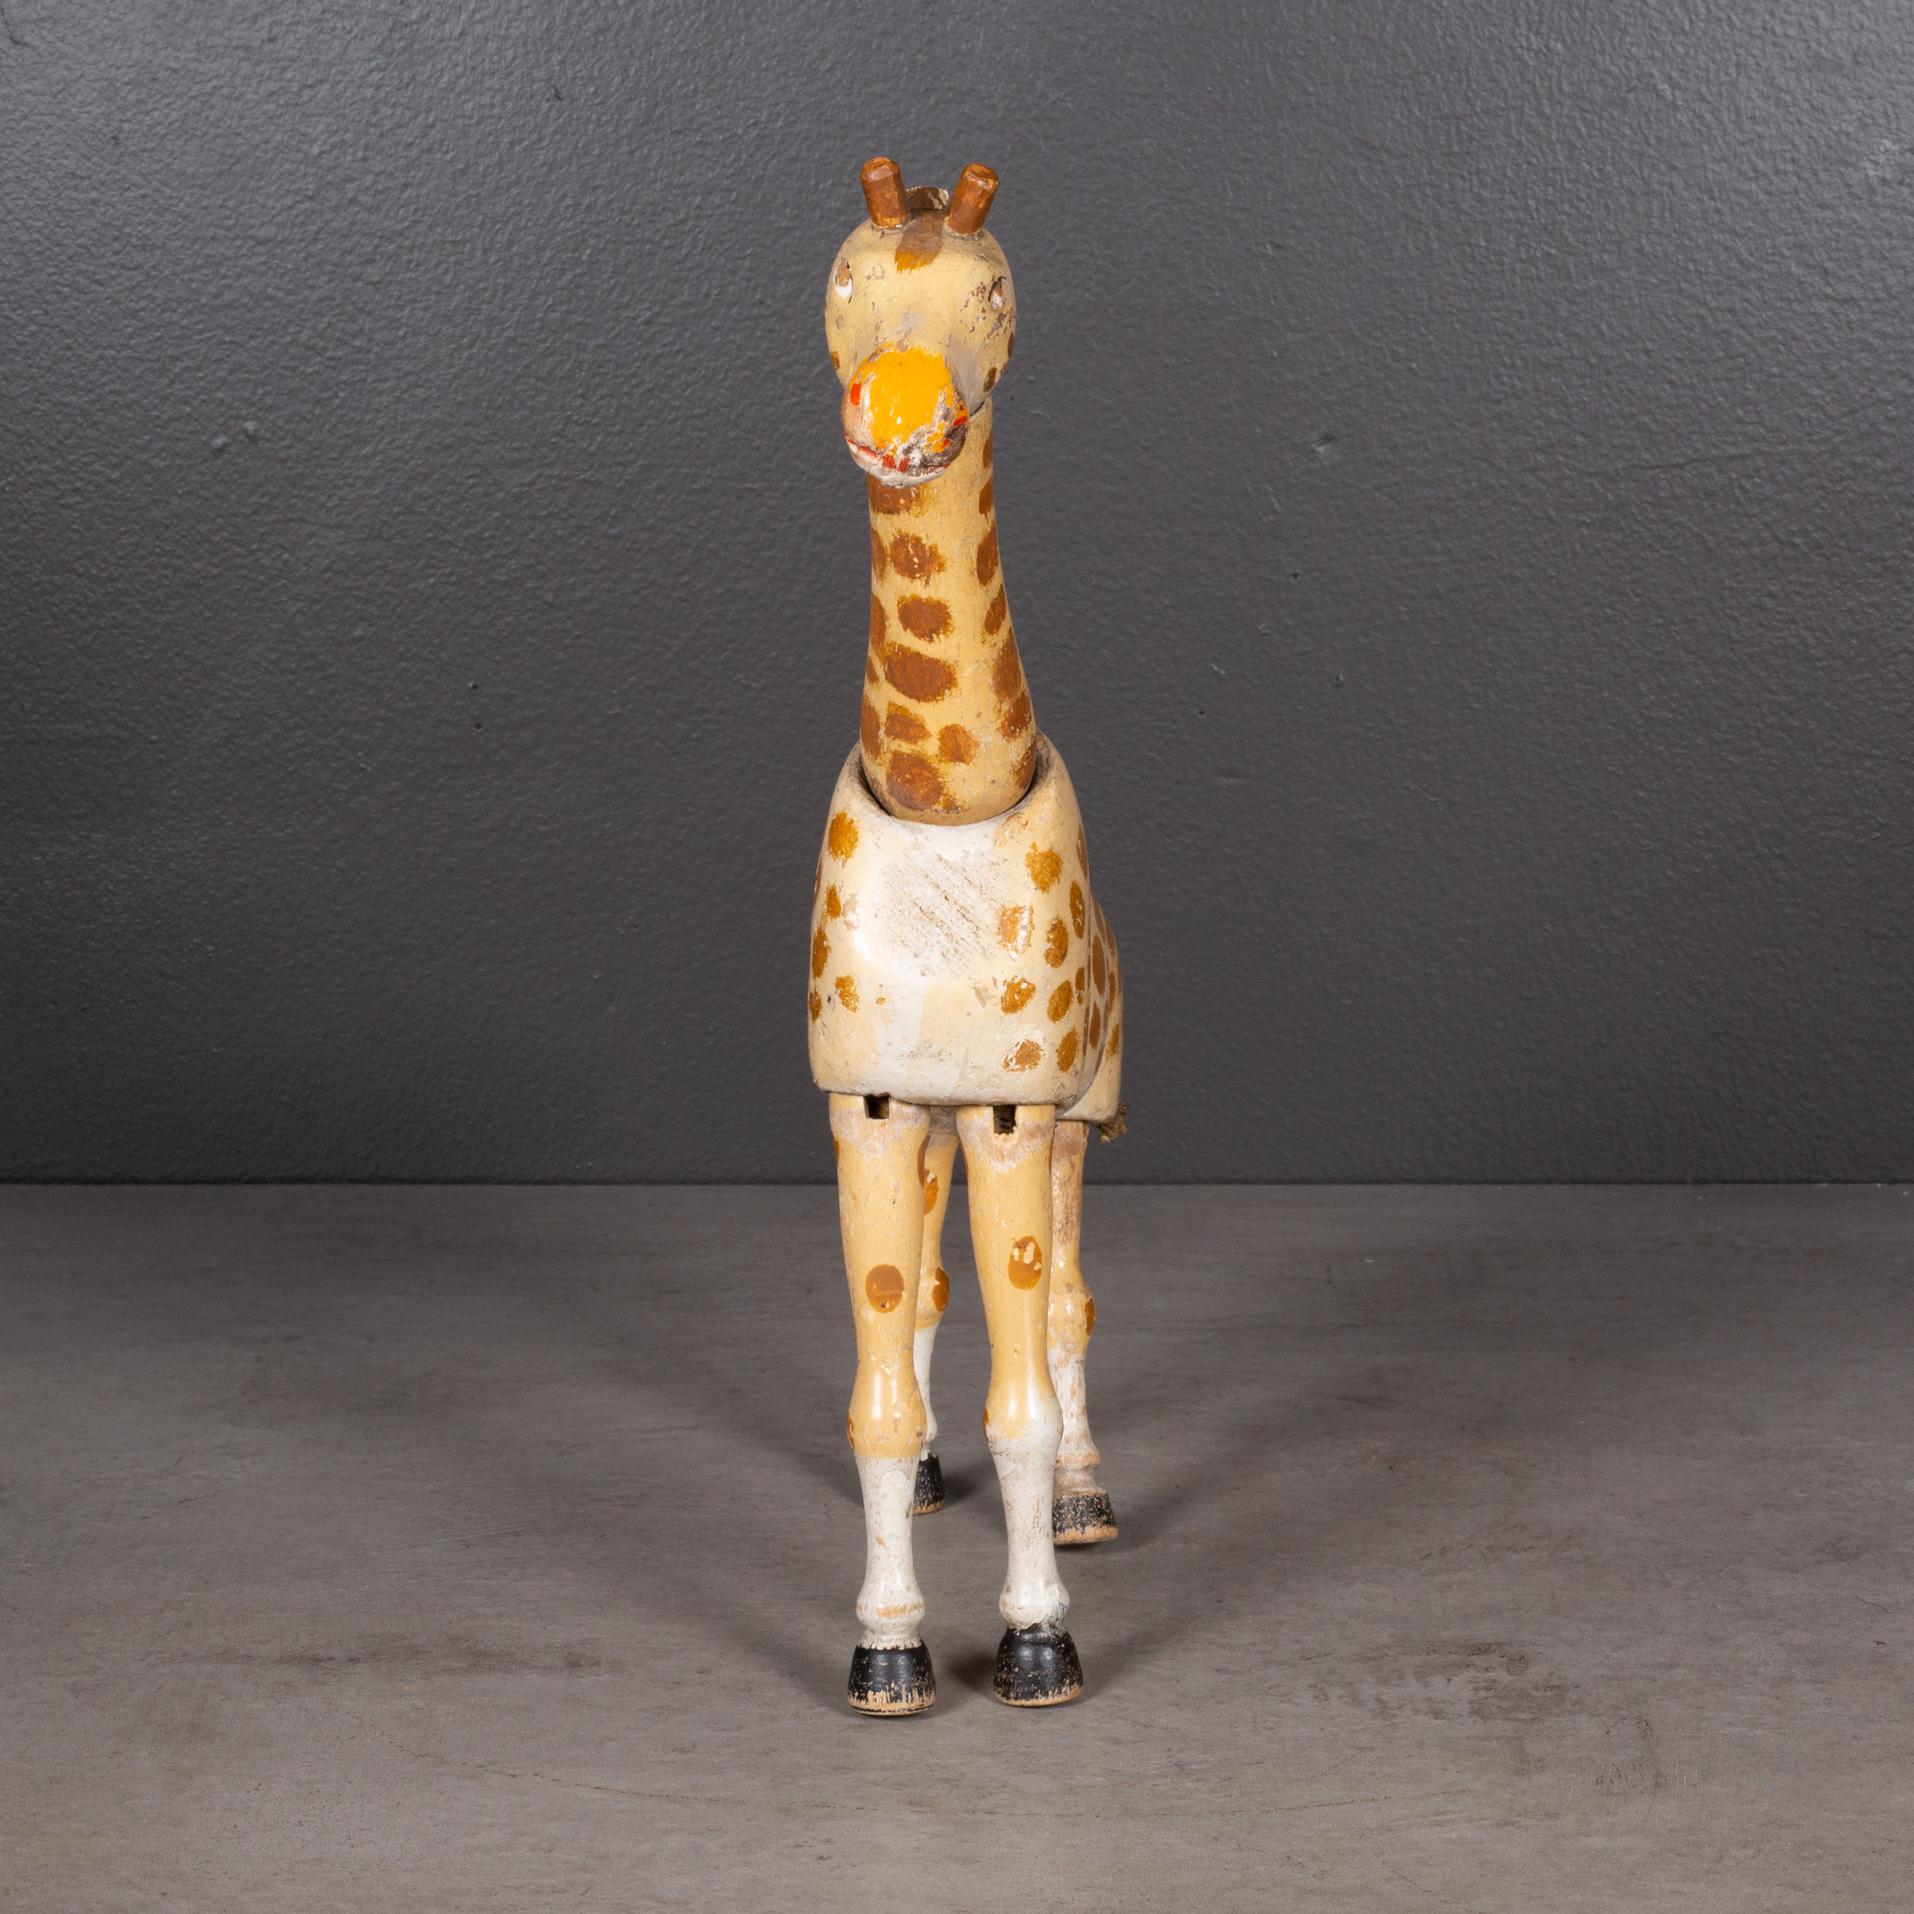 giraffe in circus